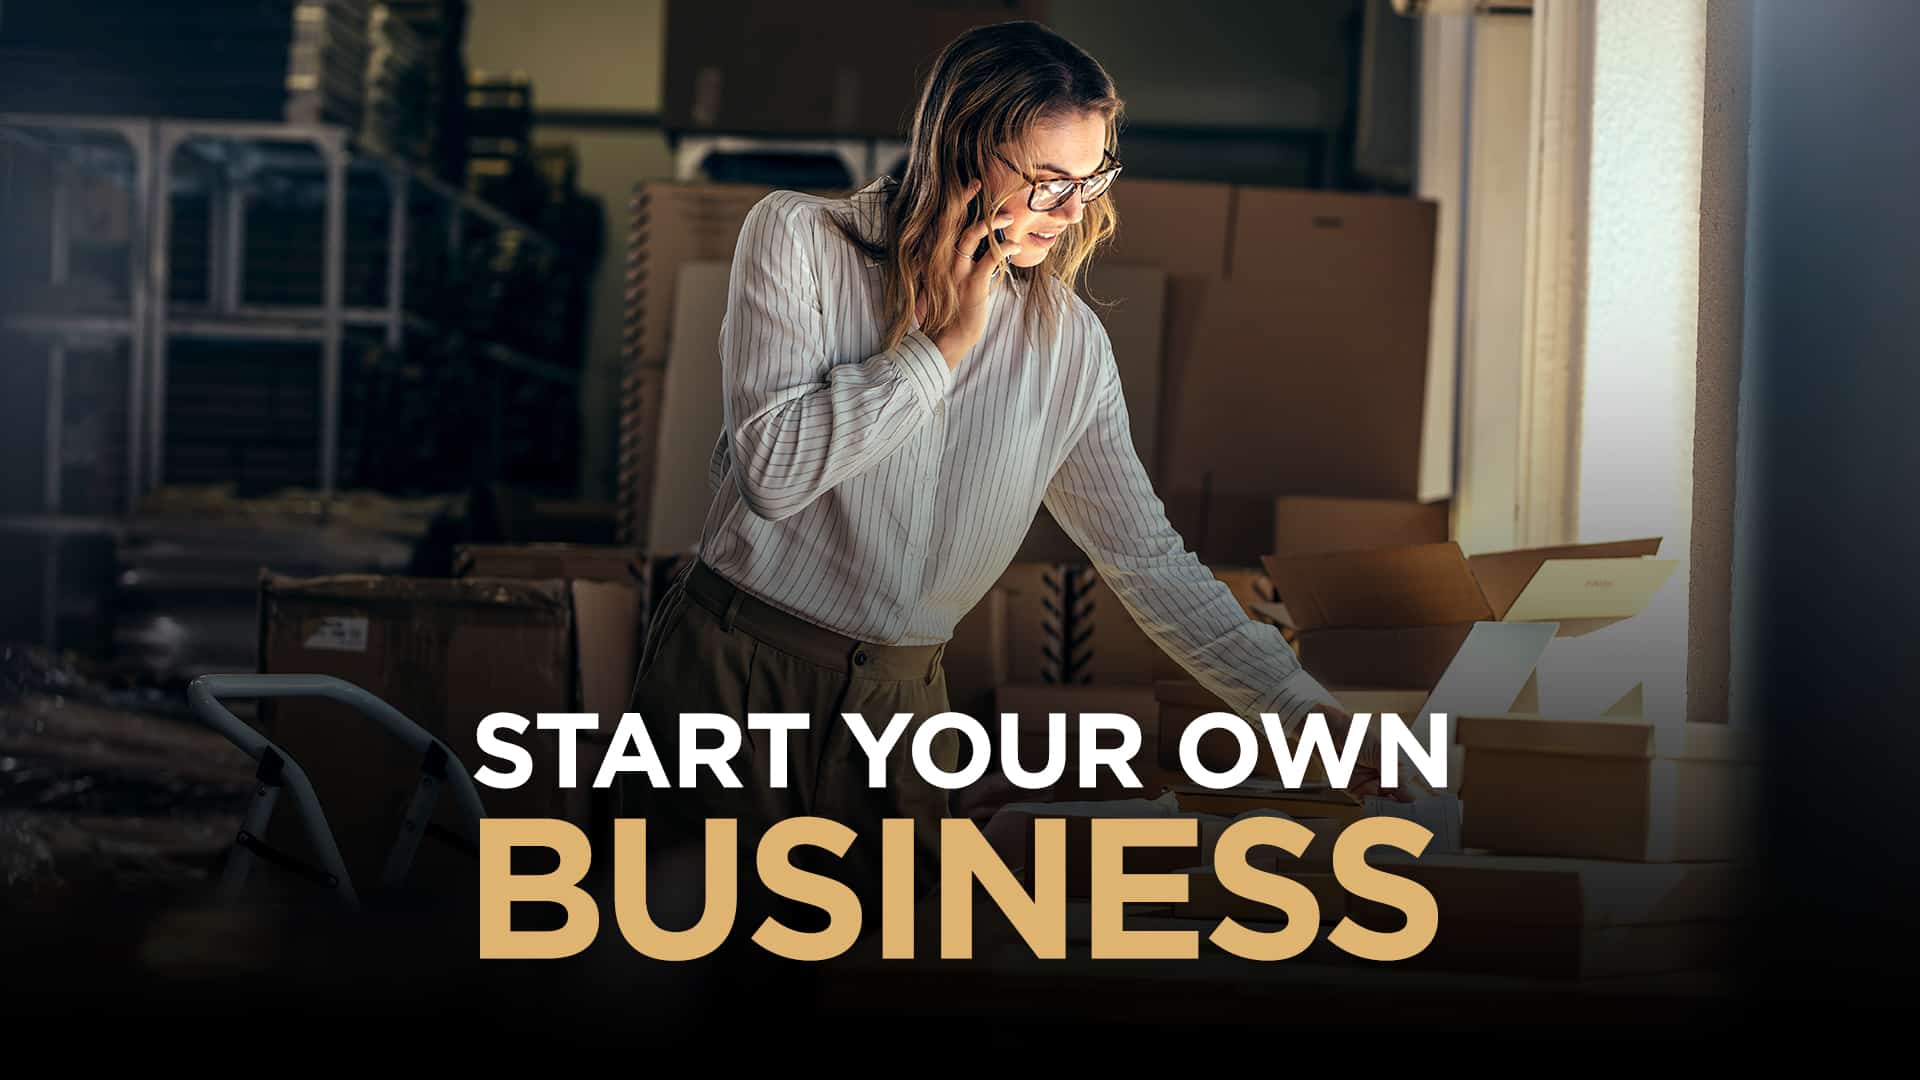 My own business. Own Business. Start own Business. Starting your own Business. Starting your Business.